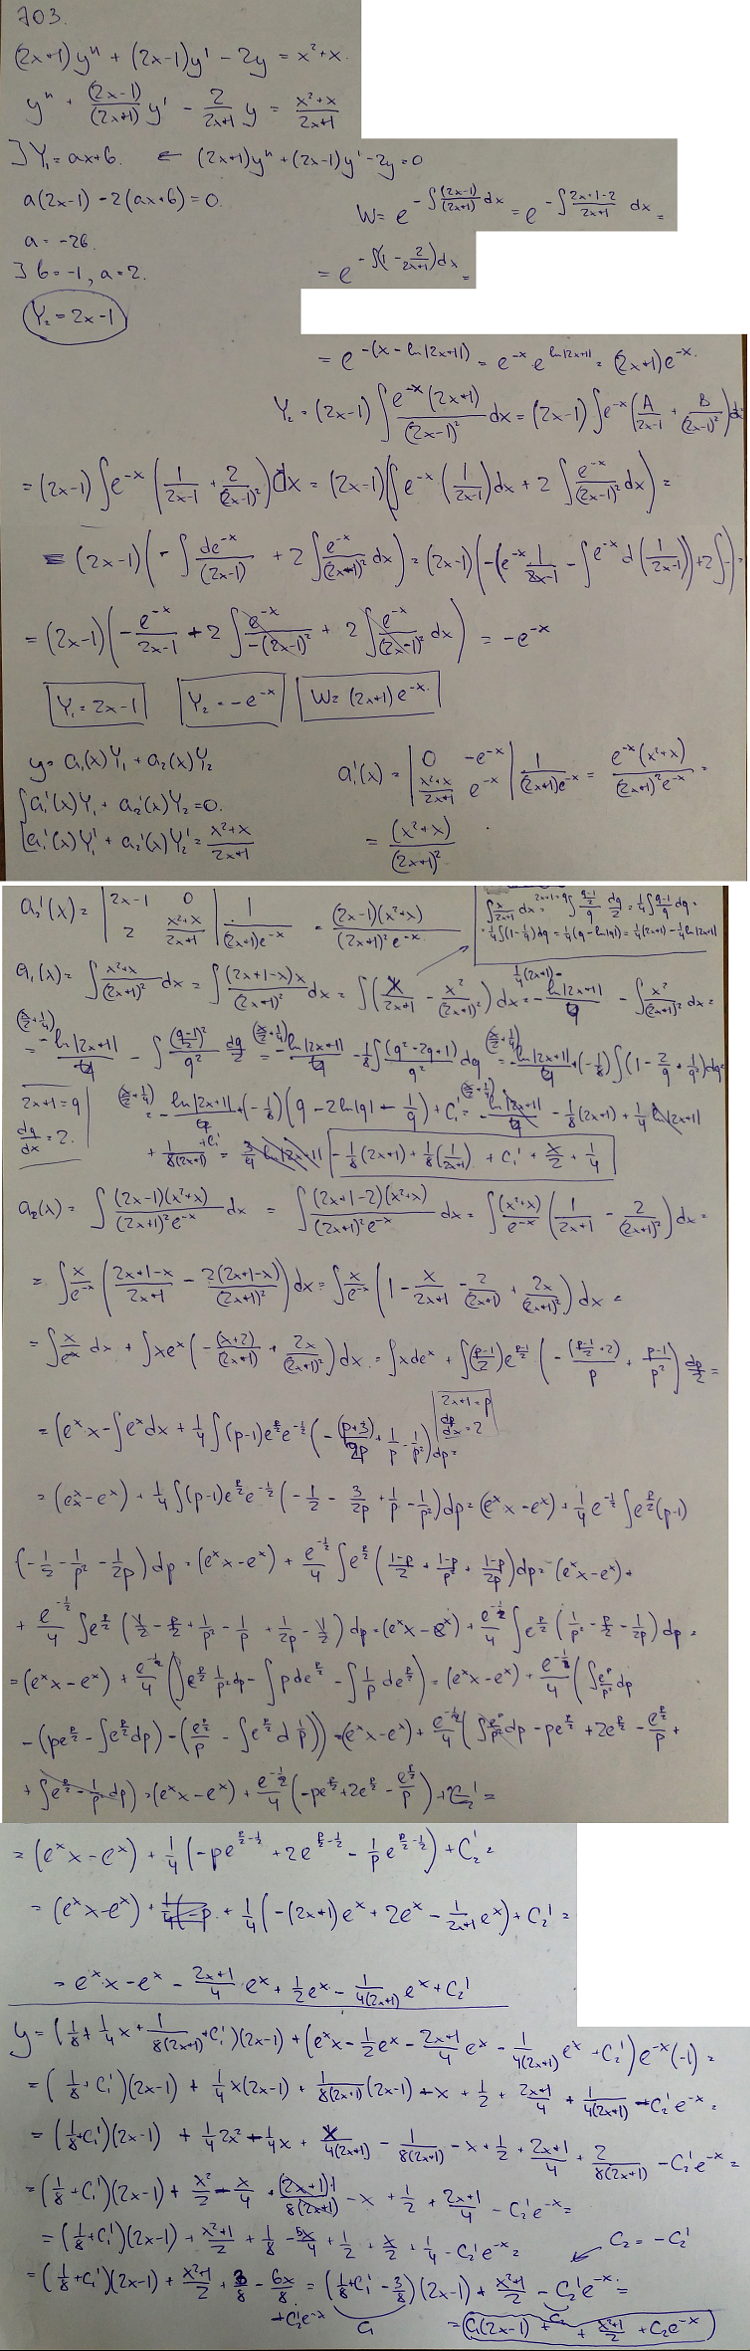 Линейные уравнения с переменными коэффициентами - решение задачи 703